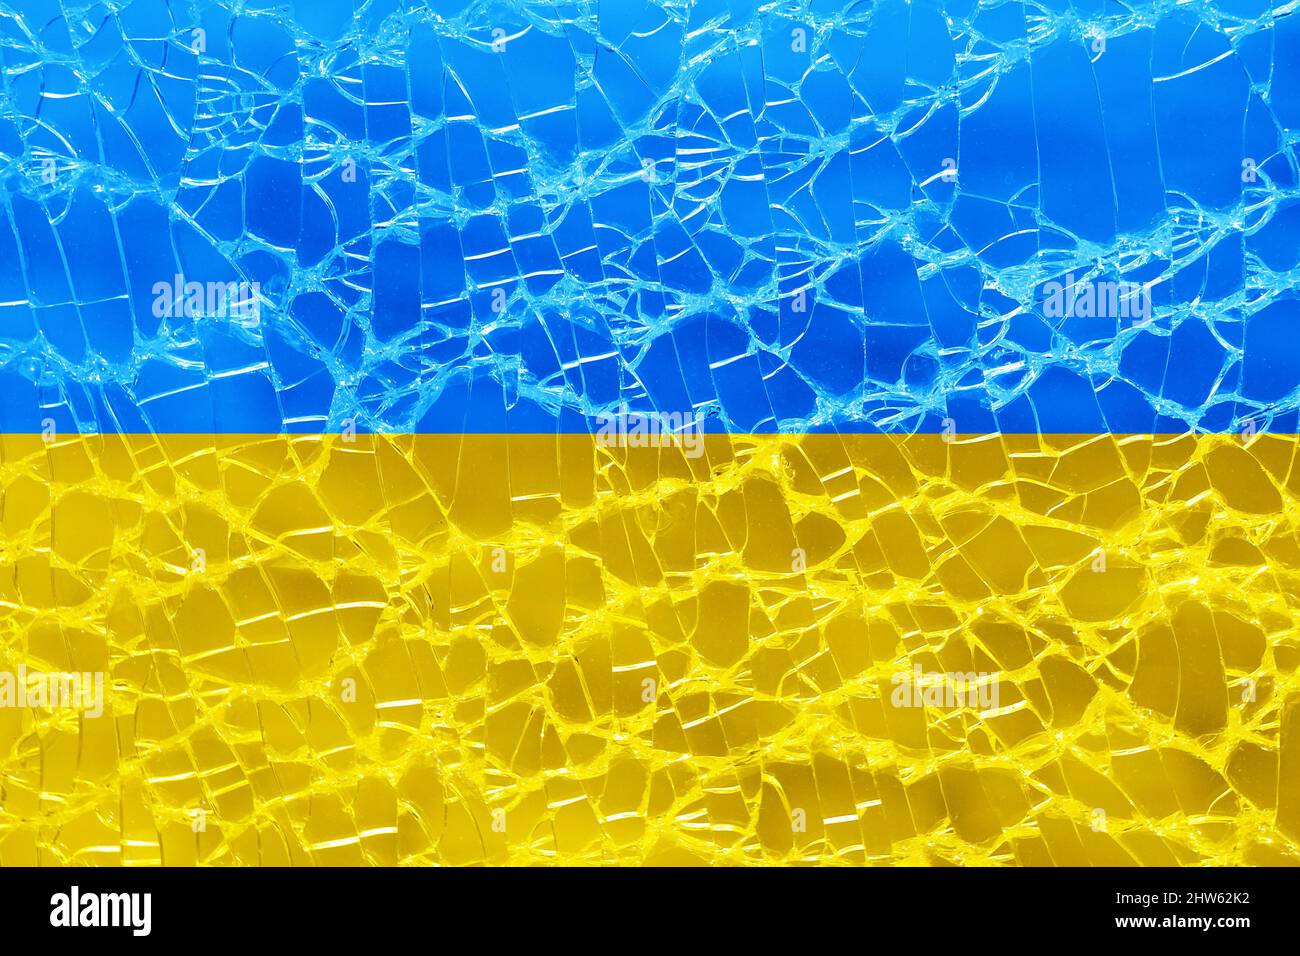 bandera de ucrania sobre fondo de cristal roto Foto de stock